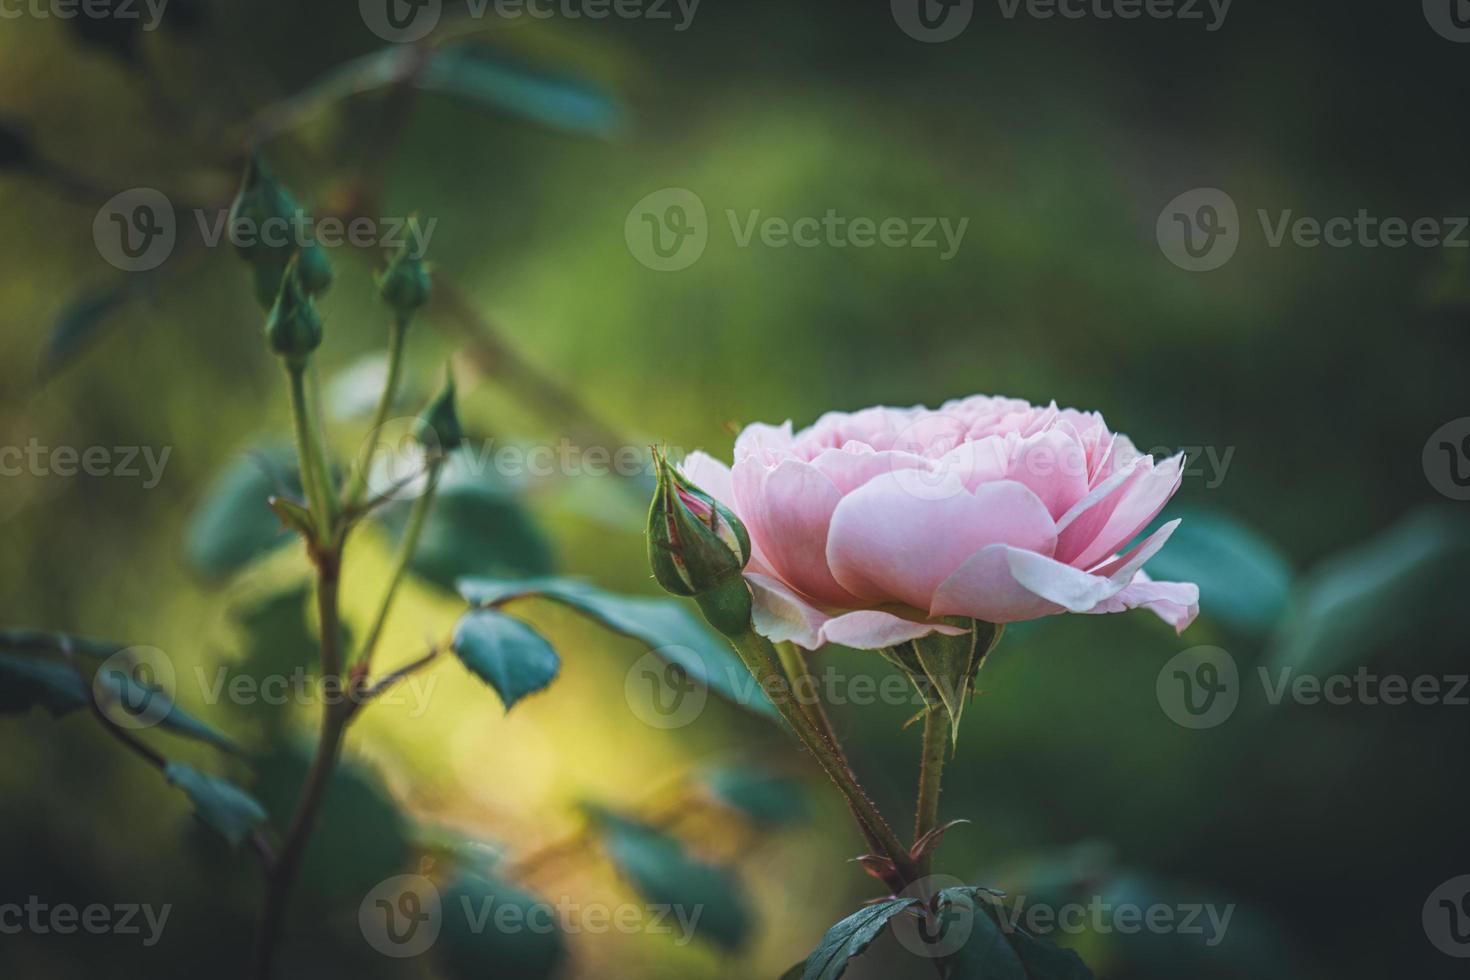 rose clair et bourgeons dans un jardin photo